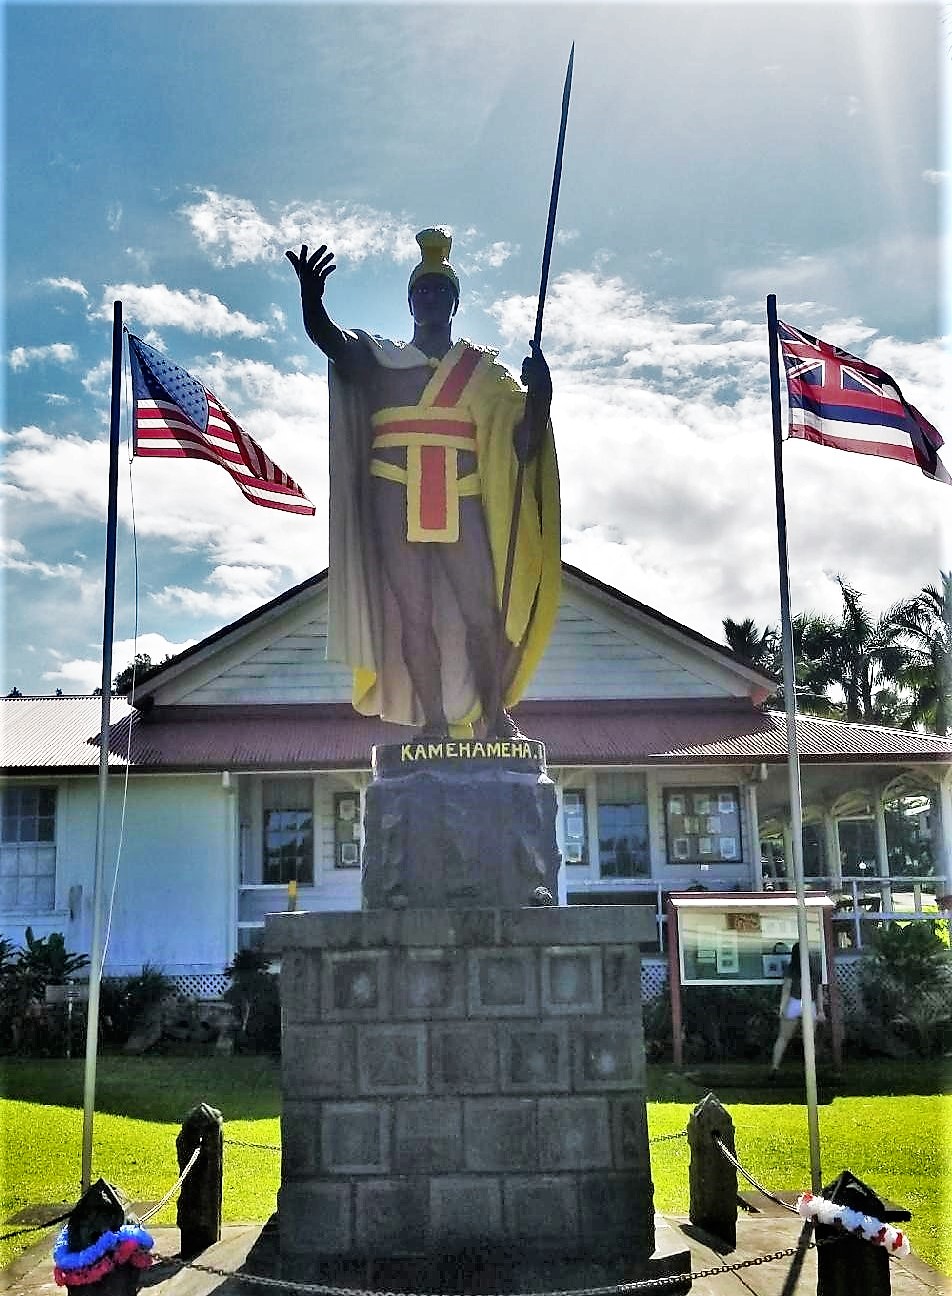 Original statue of King Kamehameha on display in Kapa'au